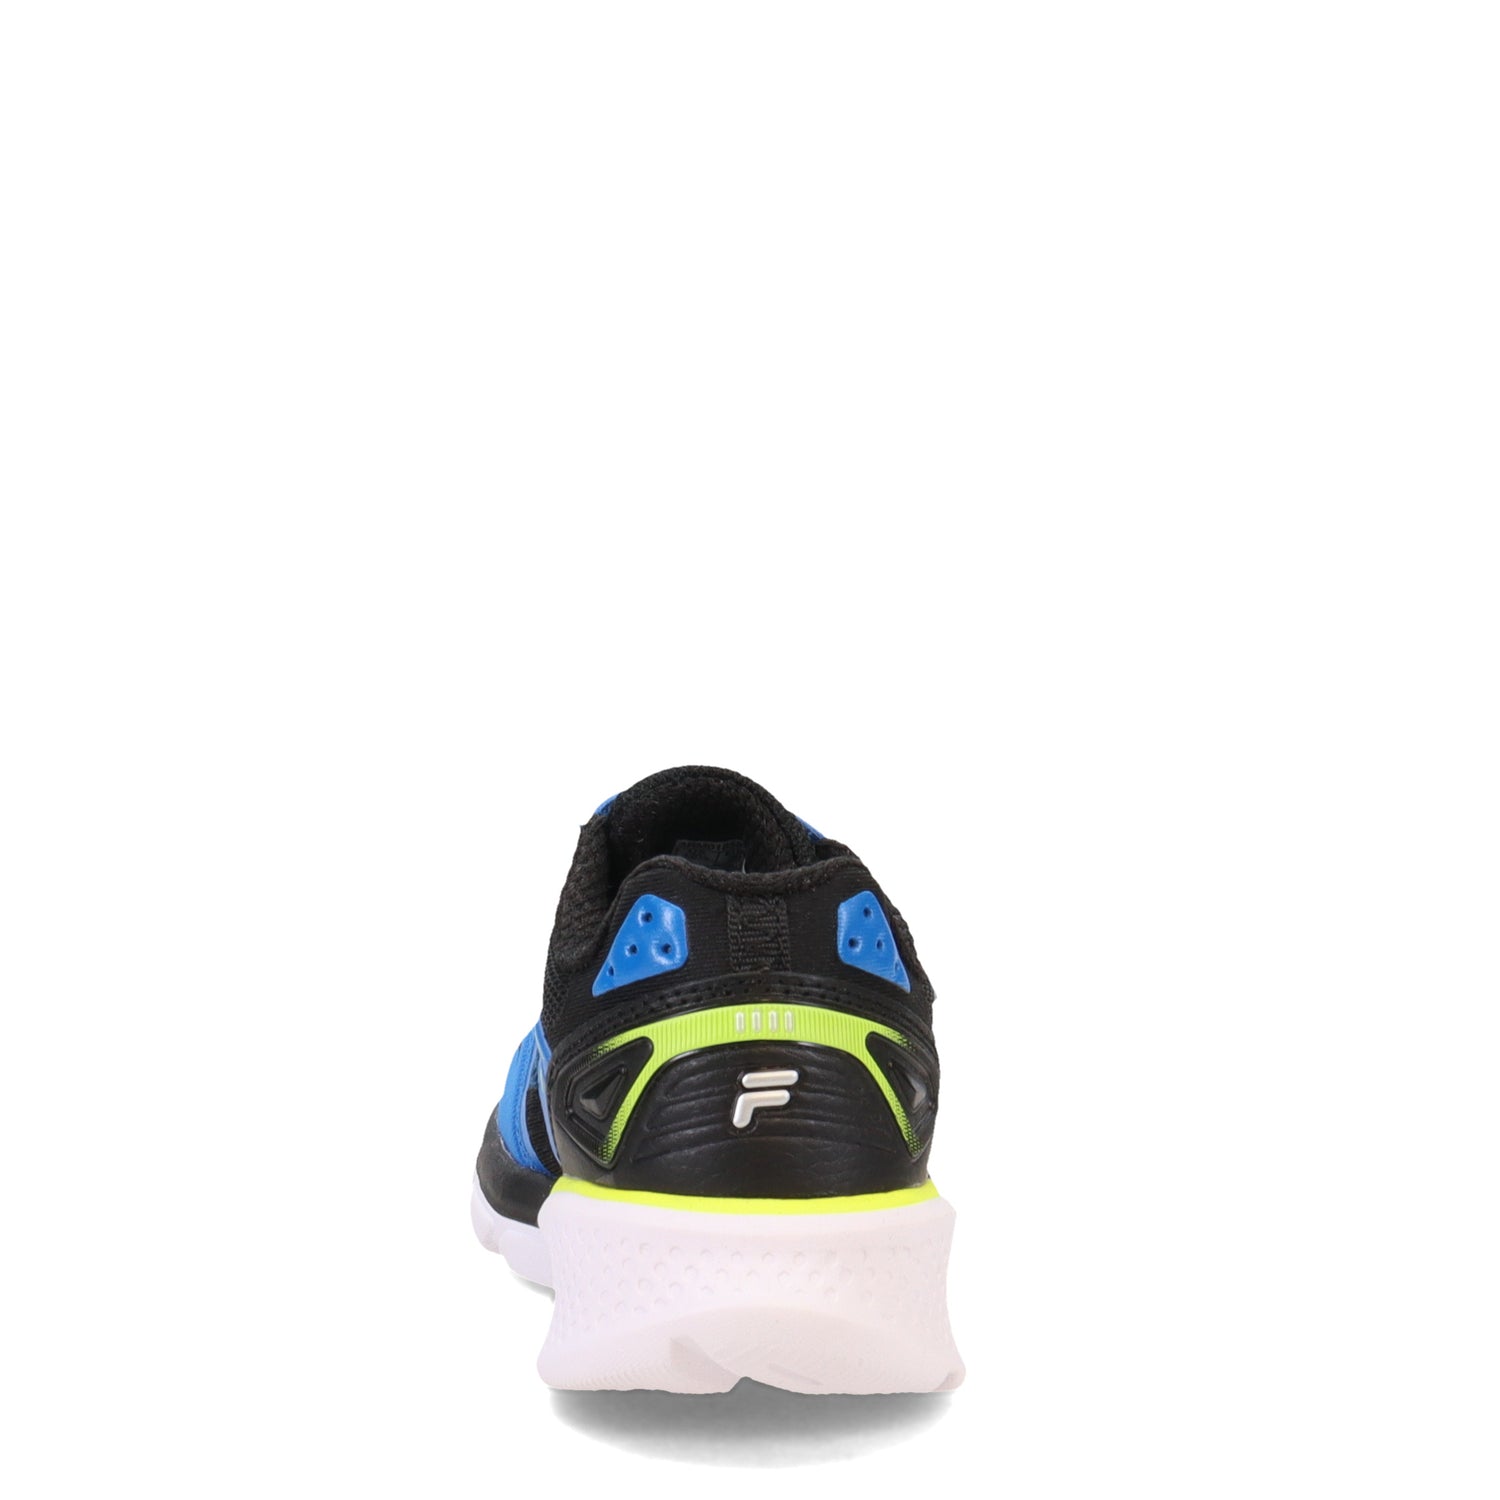 Peltz Shoes  Boy's Fila Wanderun Strap Sneaker - Little Kid & Big Kid BLUE 3RM01858-405